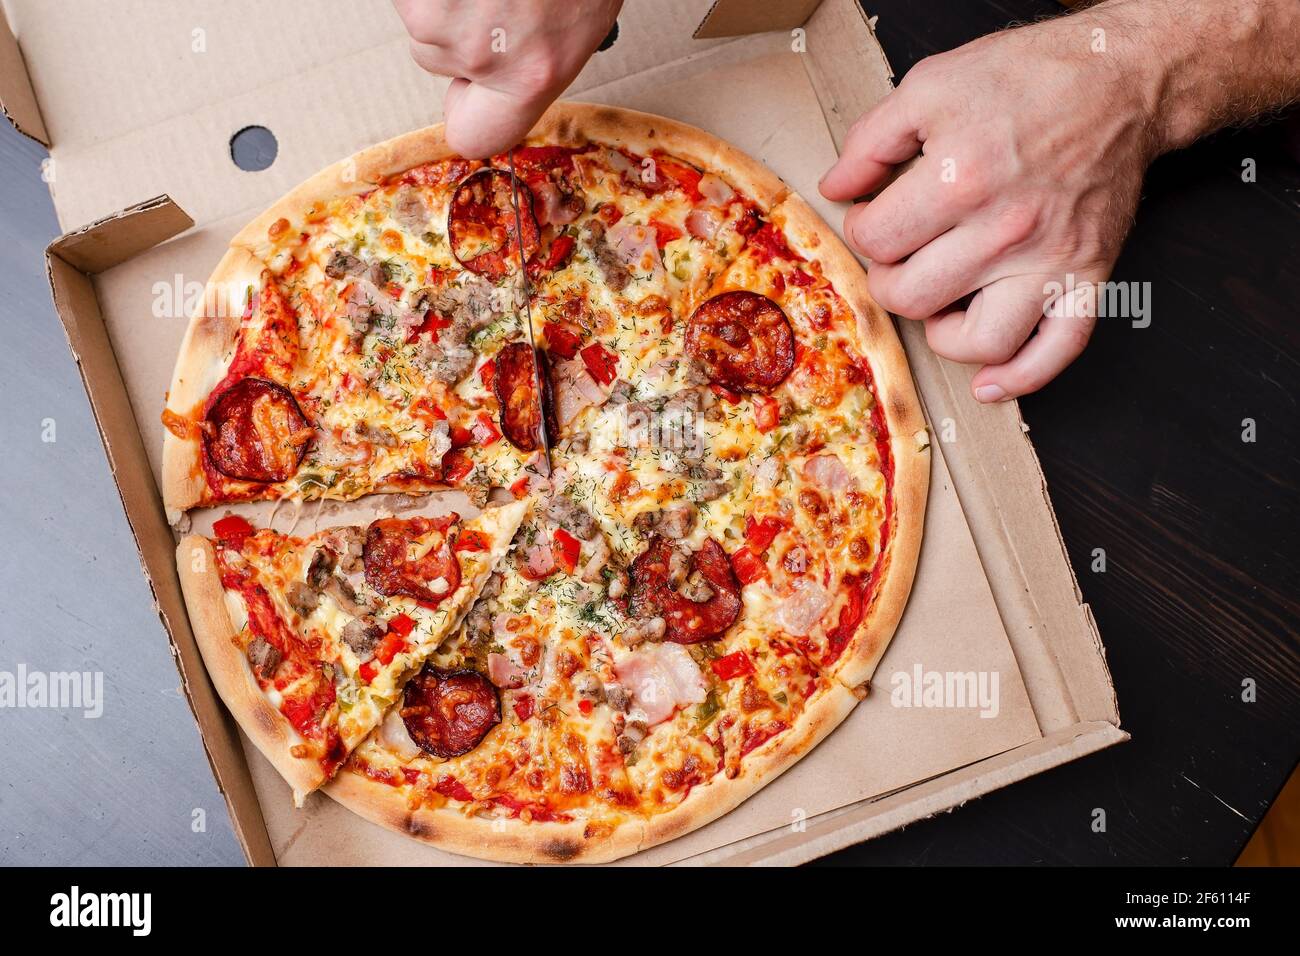 La mano dell'uomo sta tagliando una pizza appetitosa a fette, in una scatola, su un tavolo nero. Vista dall'alto. Foto Stock